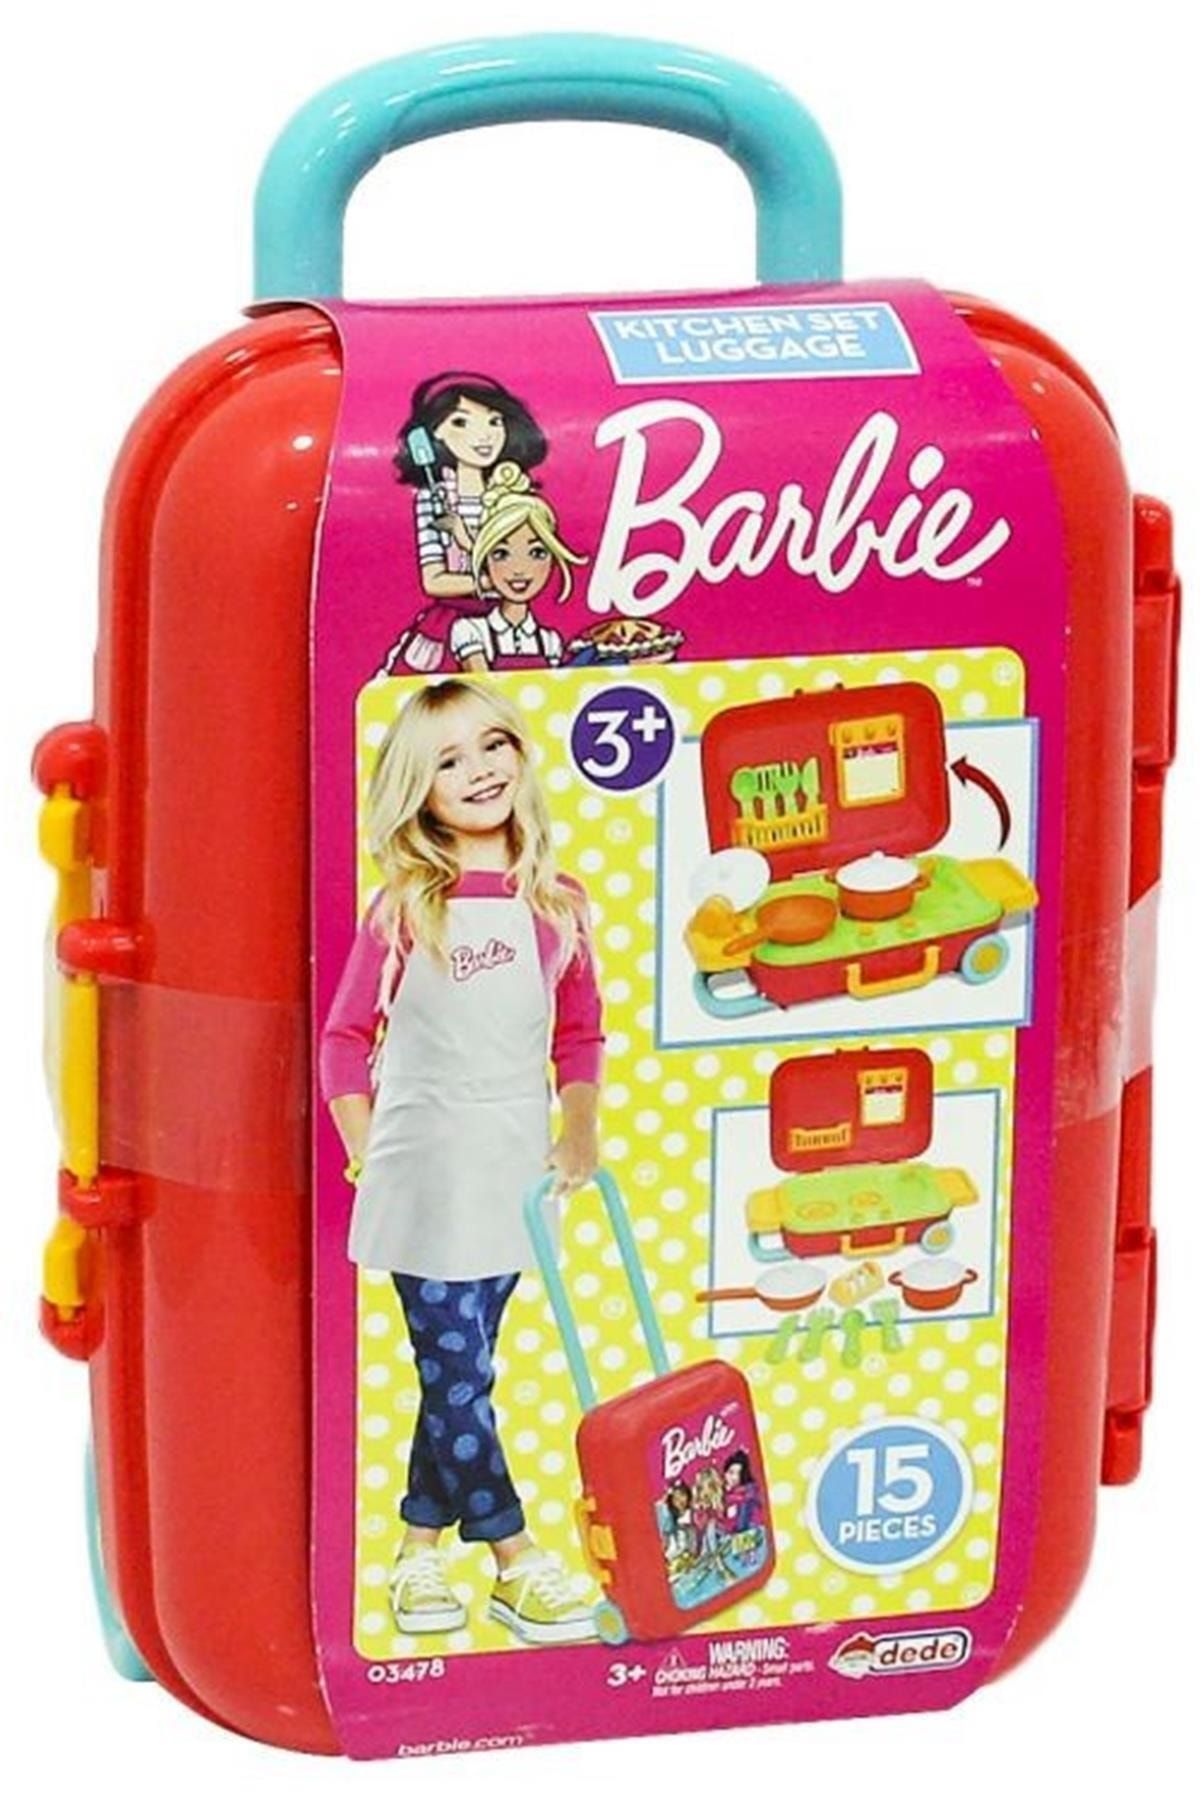 DEDE Marka: Barbie Mutfak Seti Bavulum Kategori: Diğer Oyun Takımları